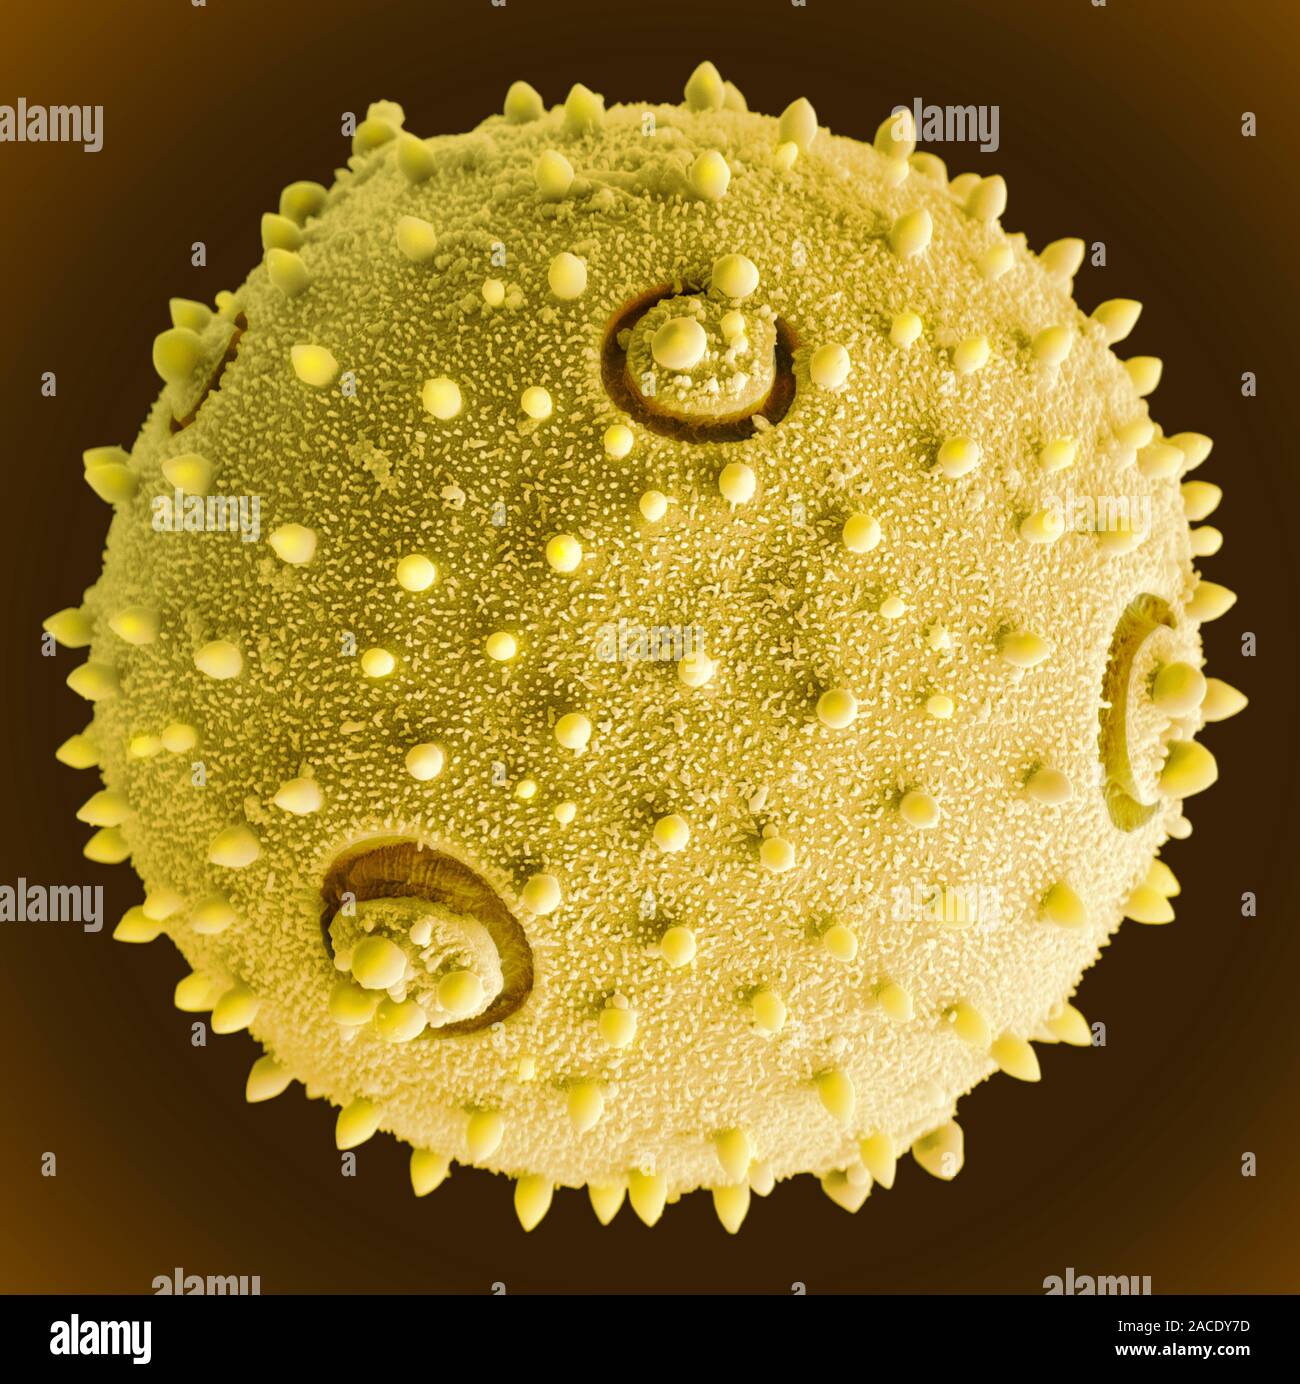 Пыльца и споры. Пыльца сосны микроскоп. Пыльца амброзии под микроскопом. Пыльца сосны микропрепарат. Пыльцевое зерно микроскоп.